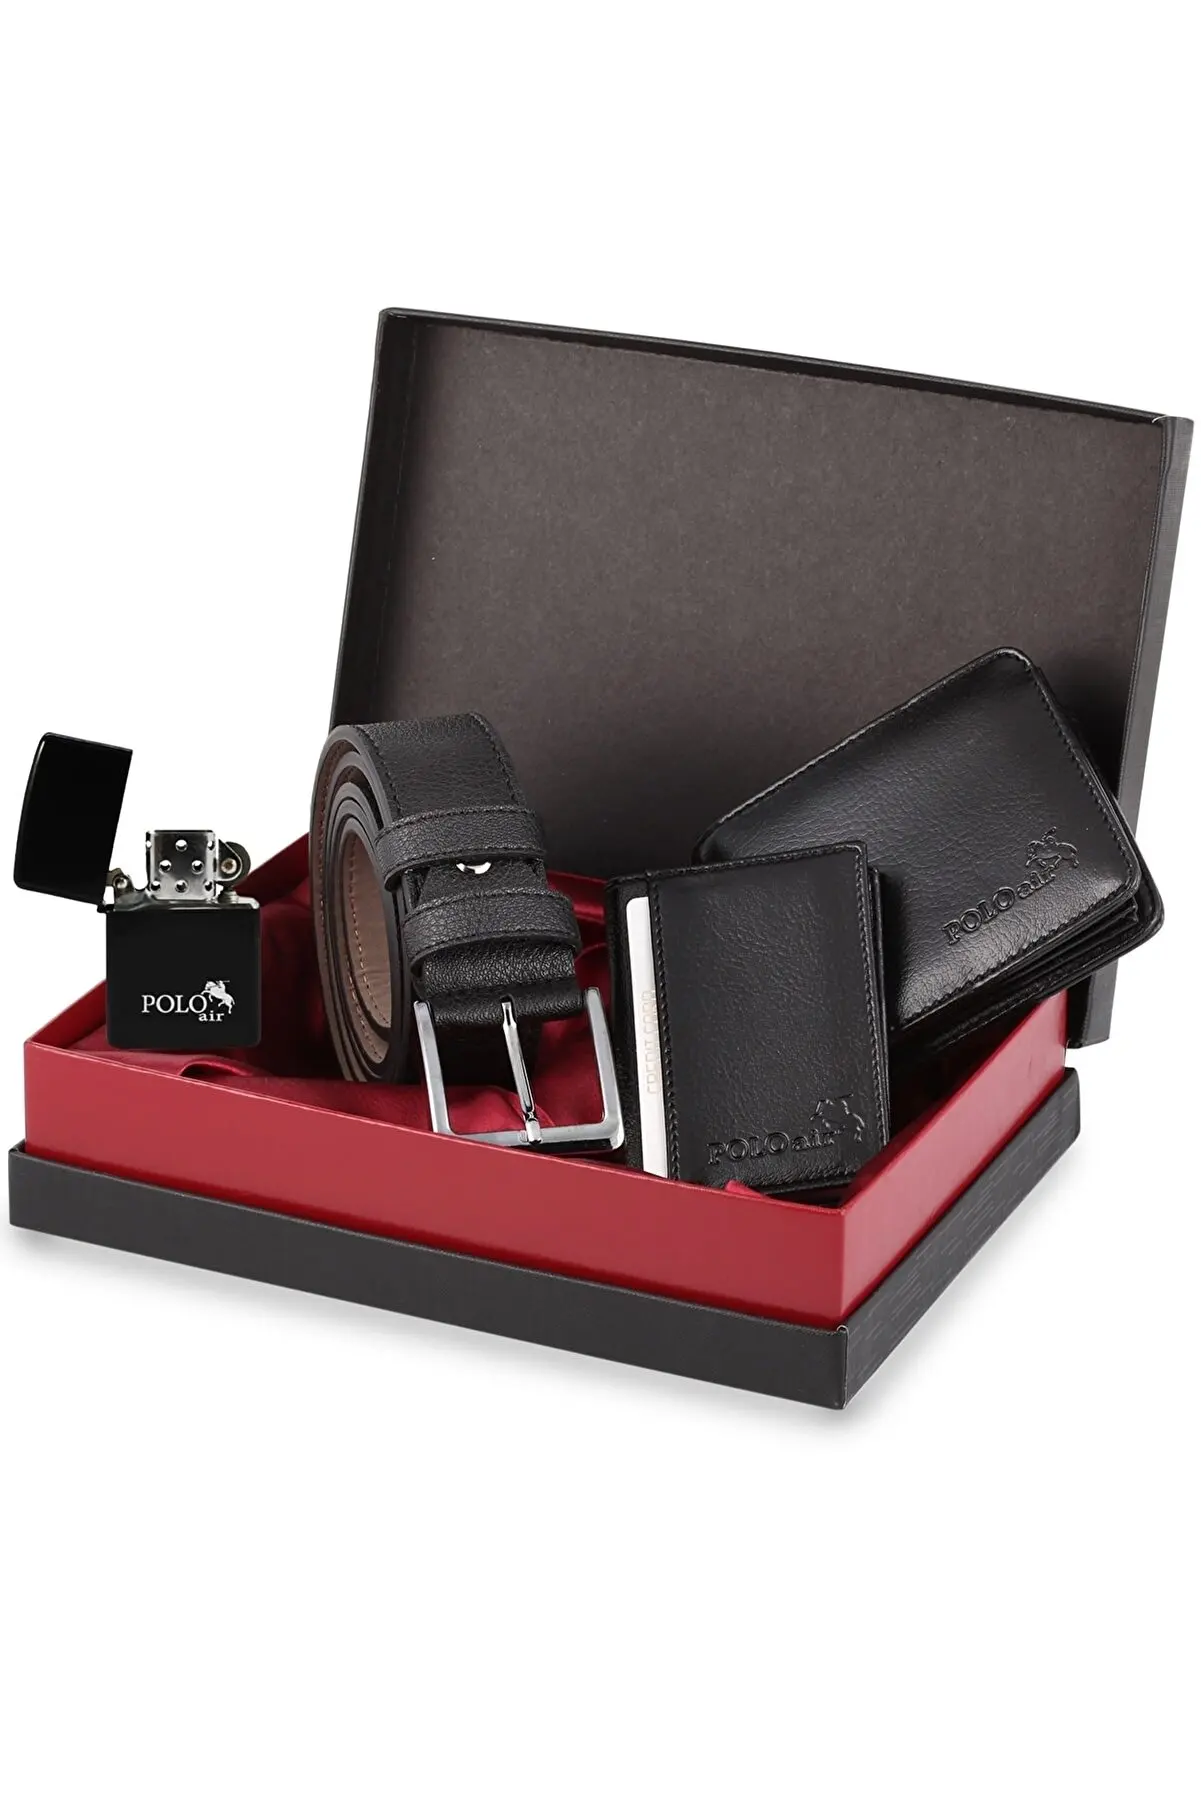 Boxed Black Classic Men's Wallet Belt Card Holder Gasoline Lighter Set